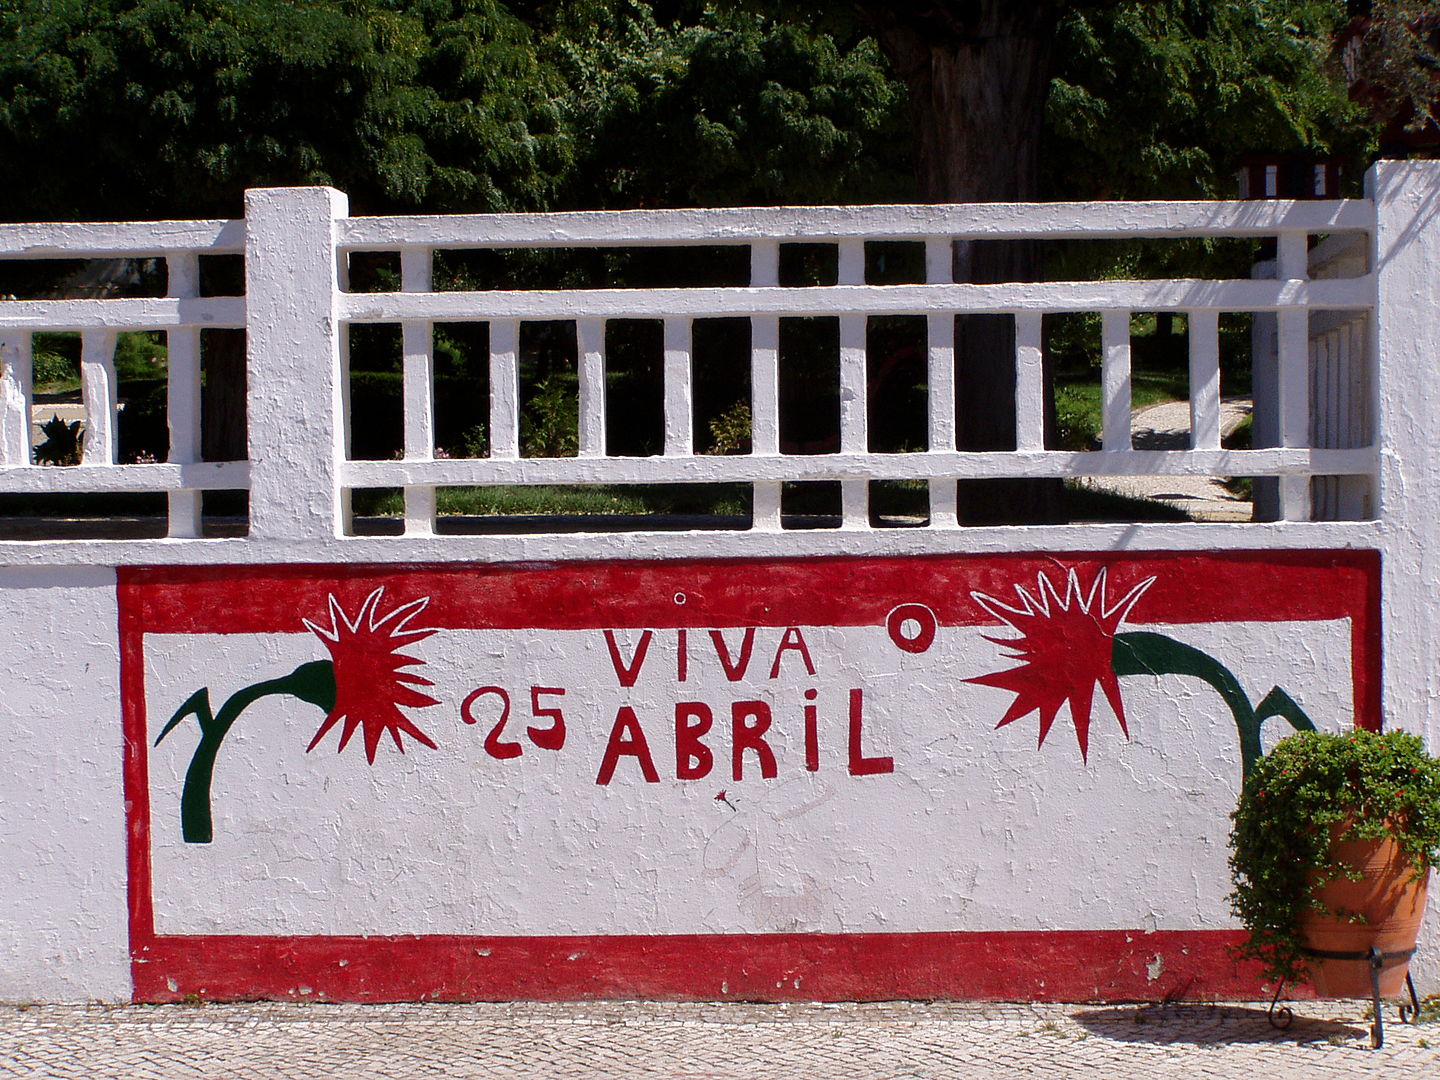 Viva o 25 de abril graffiti in Portugal by Júlio Reis via Wikimedia Commons (CC BY-SA 2.5)